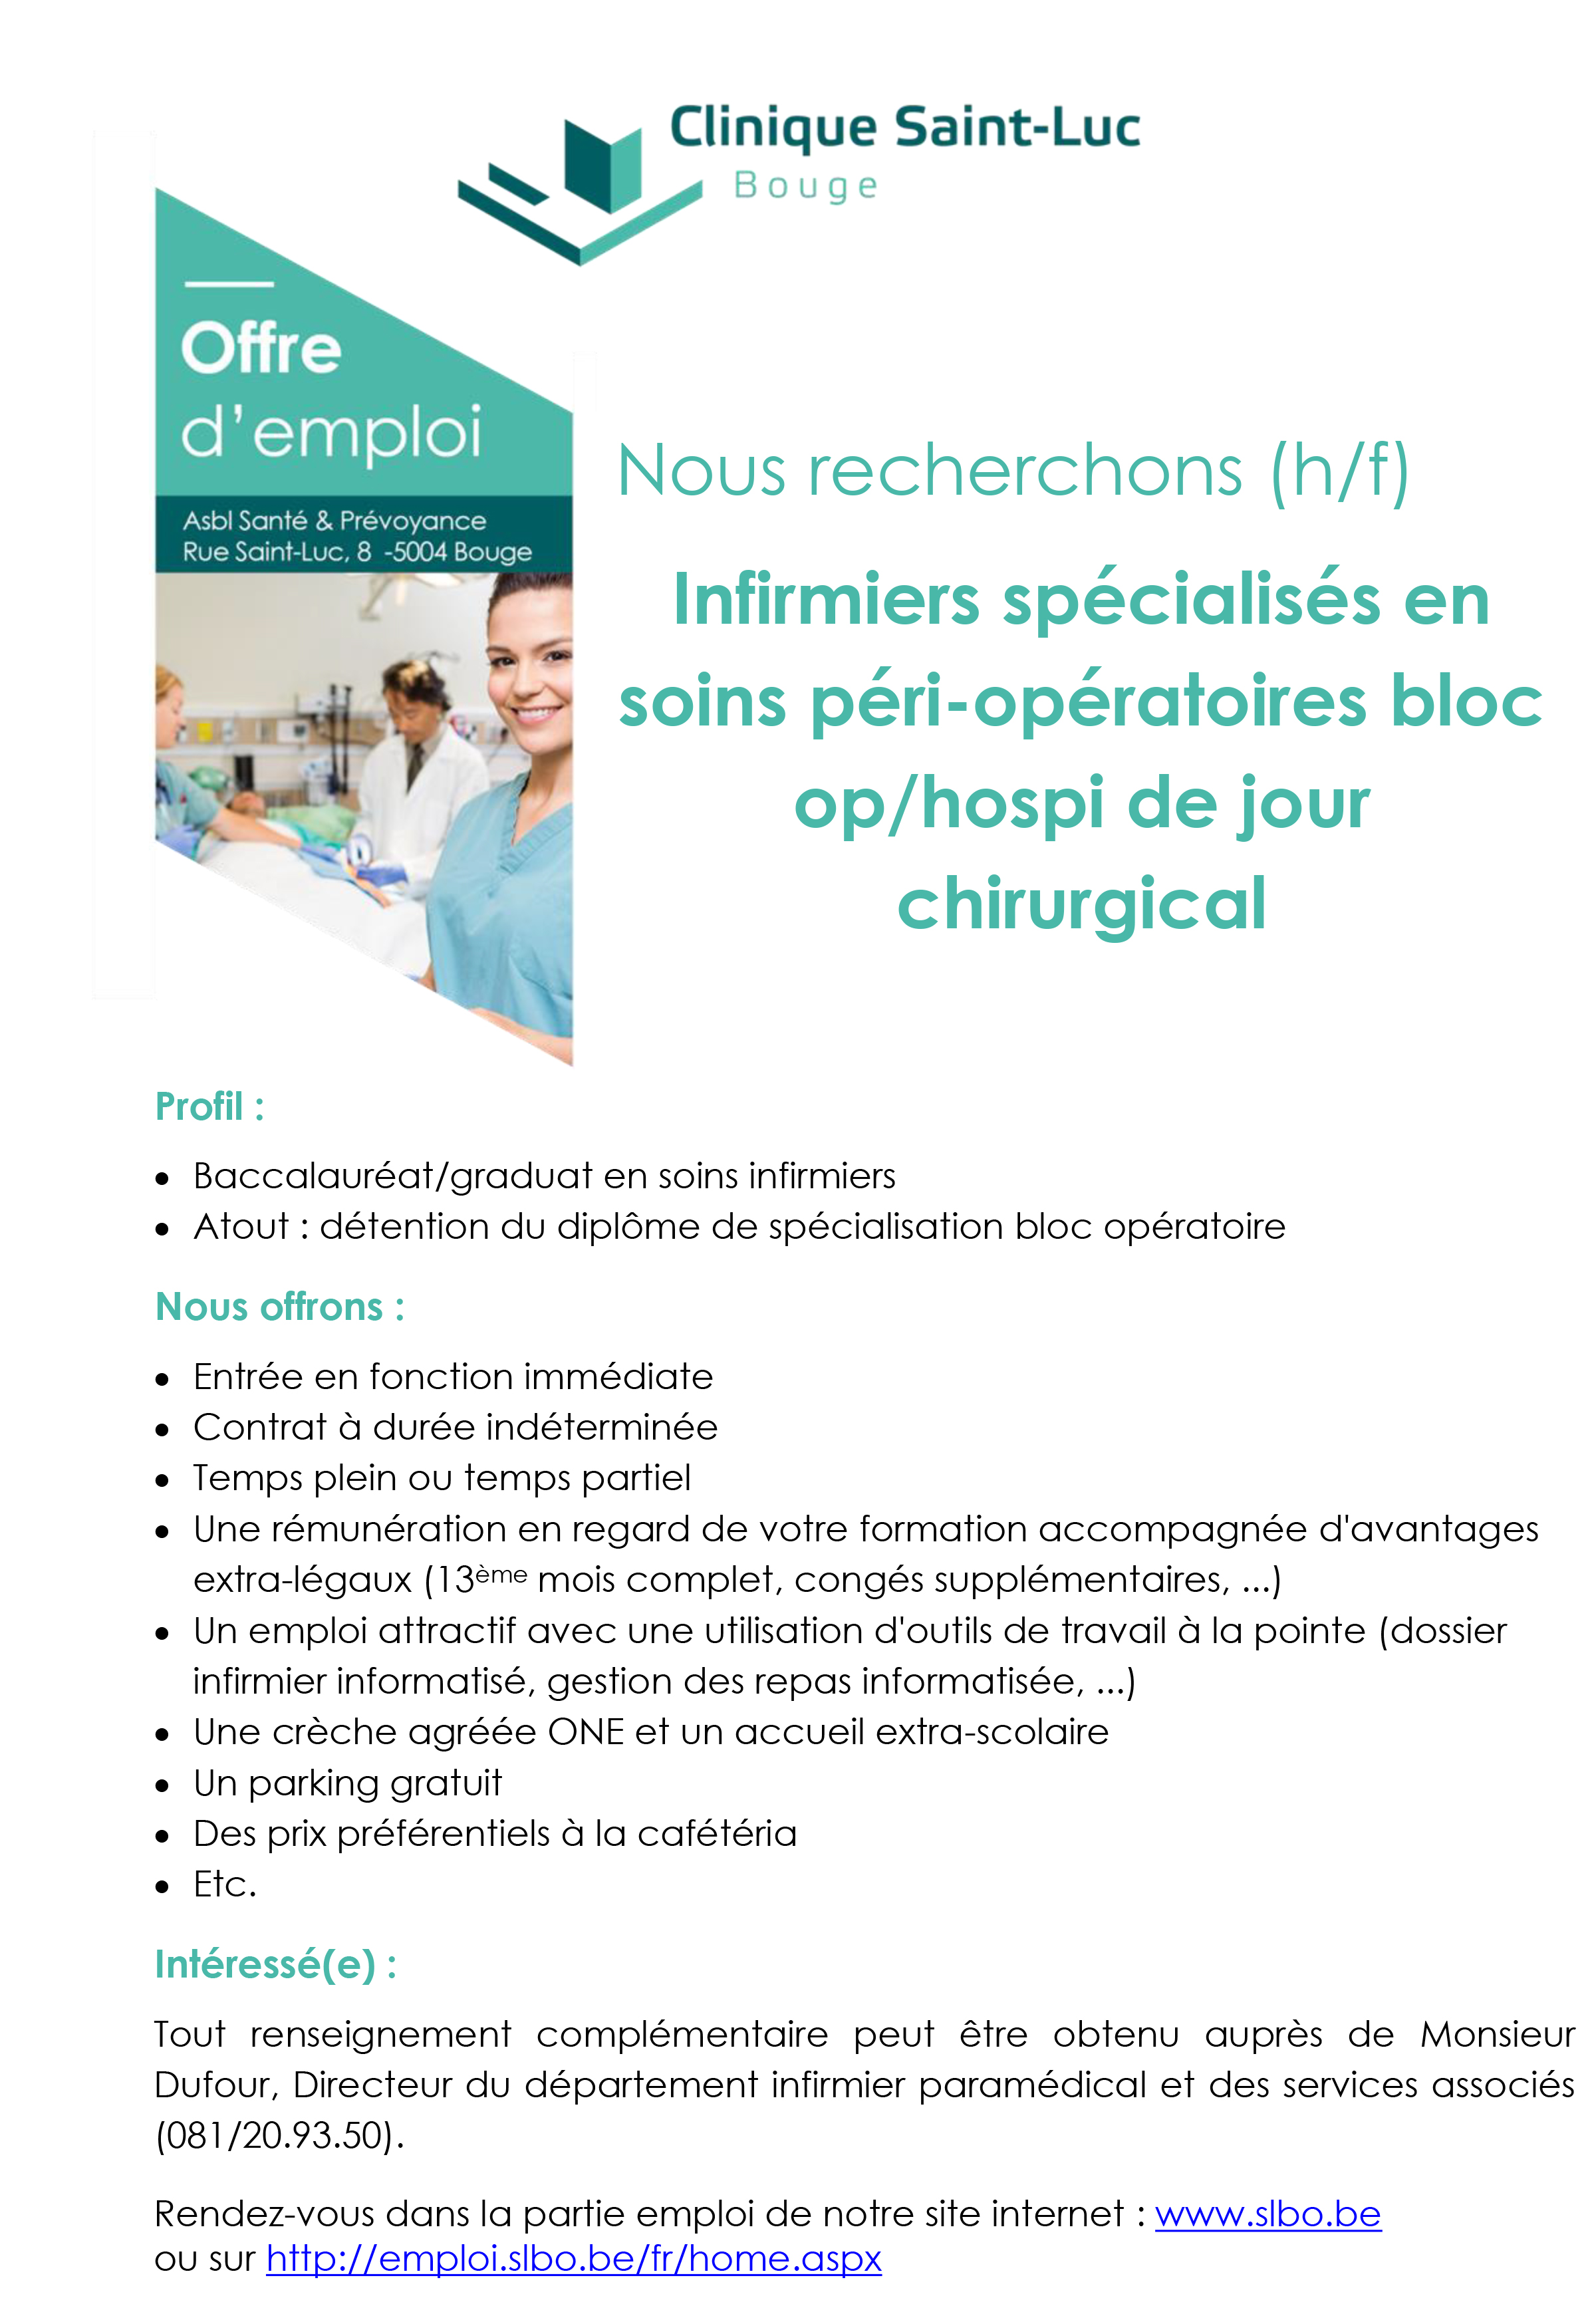 La Clinique Saint-Luc (Bouge) recherche (h/f) des infirmiers spécialisés en soins péri-opératoires bloc op / hospi de jour chirurgical